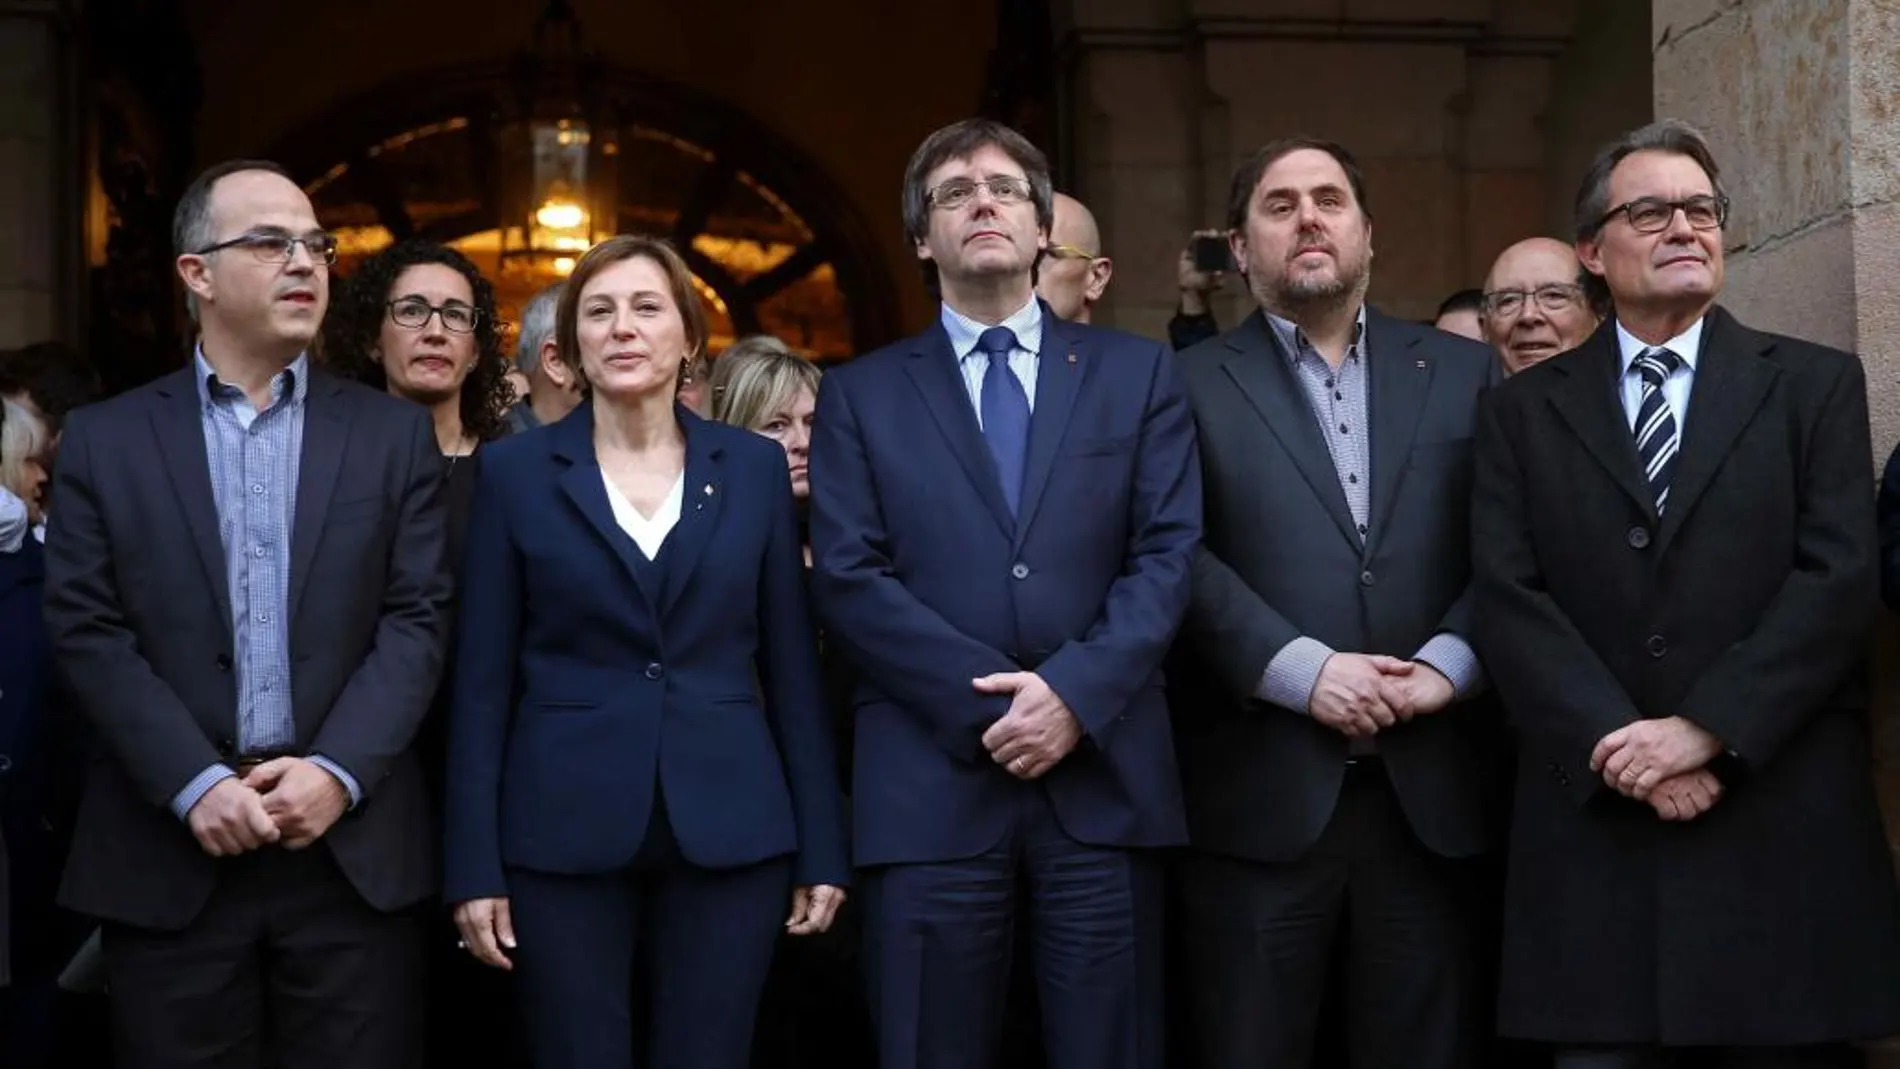 La presidenta del Parlament, Carme Forcadell (2i), acompañada por el presidente de la Generalitat, Carles Puigdemont (c); el vicepresidente, Oriol Junqueras (2d); el expresidente Artur Mas (d); el portavoz de JxS, Jordi Turull (i), otros miembros del gobierno catalán y otros cargos electos del soberanismo